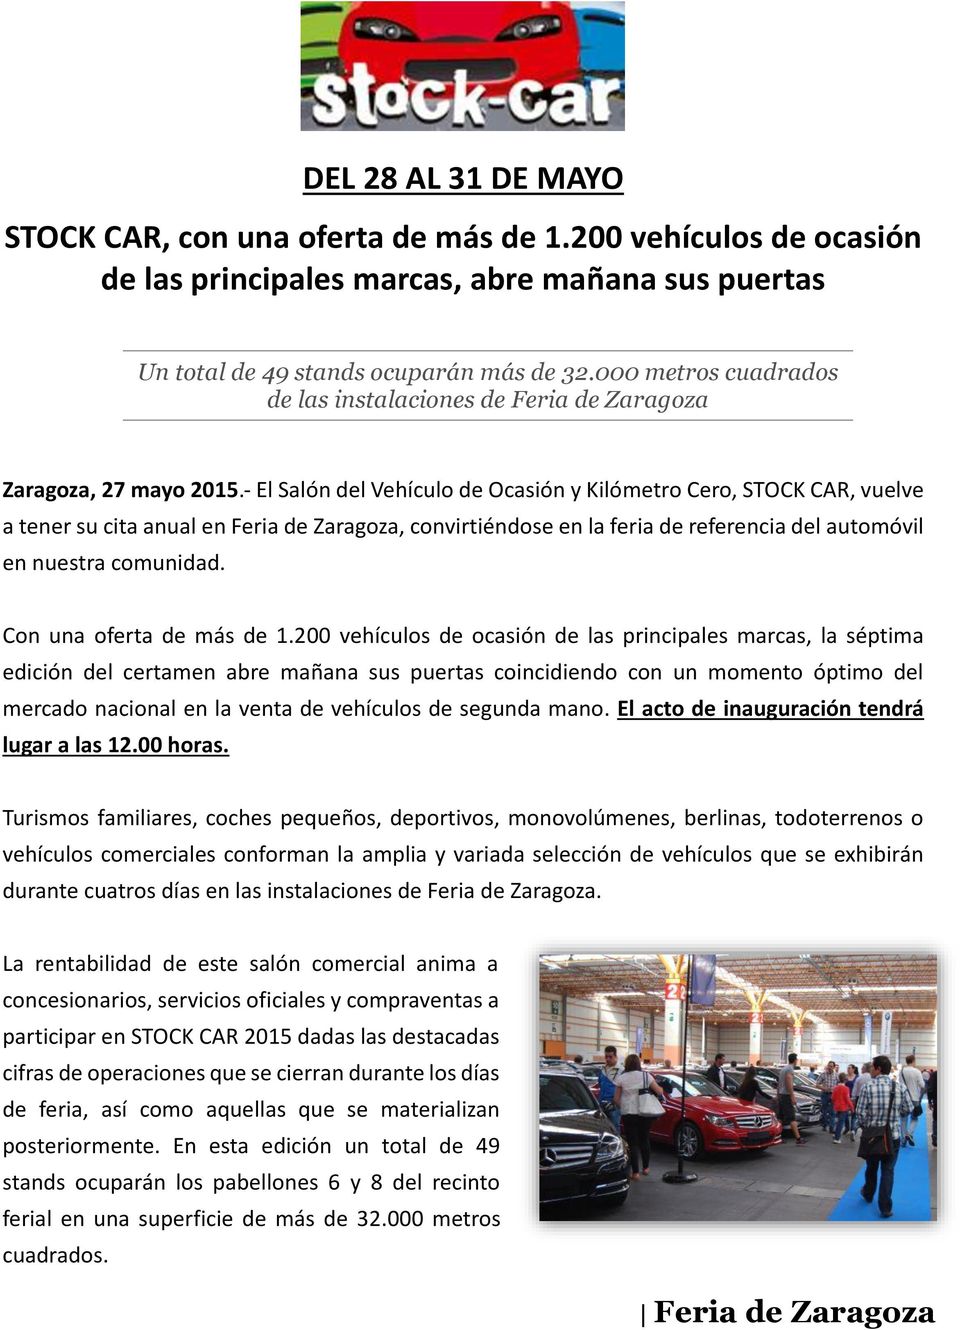 - El Salón del Vehículo de Ocasión y Kilómetro Cero, STOCK CAR, vuelve a tener su cita anual en Feria de Zaragoza, convirtiéndose en la feria de referencia del automóvil en nuestra comunidad.